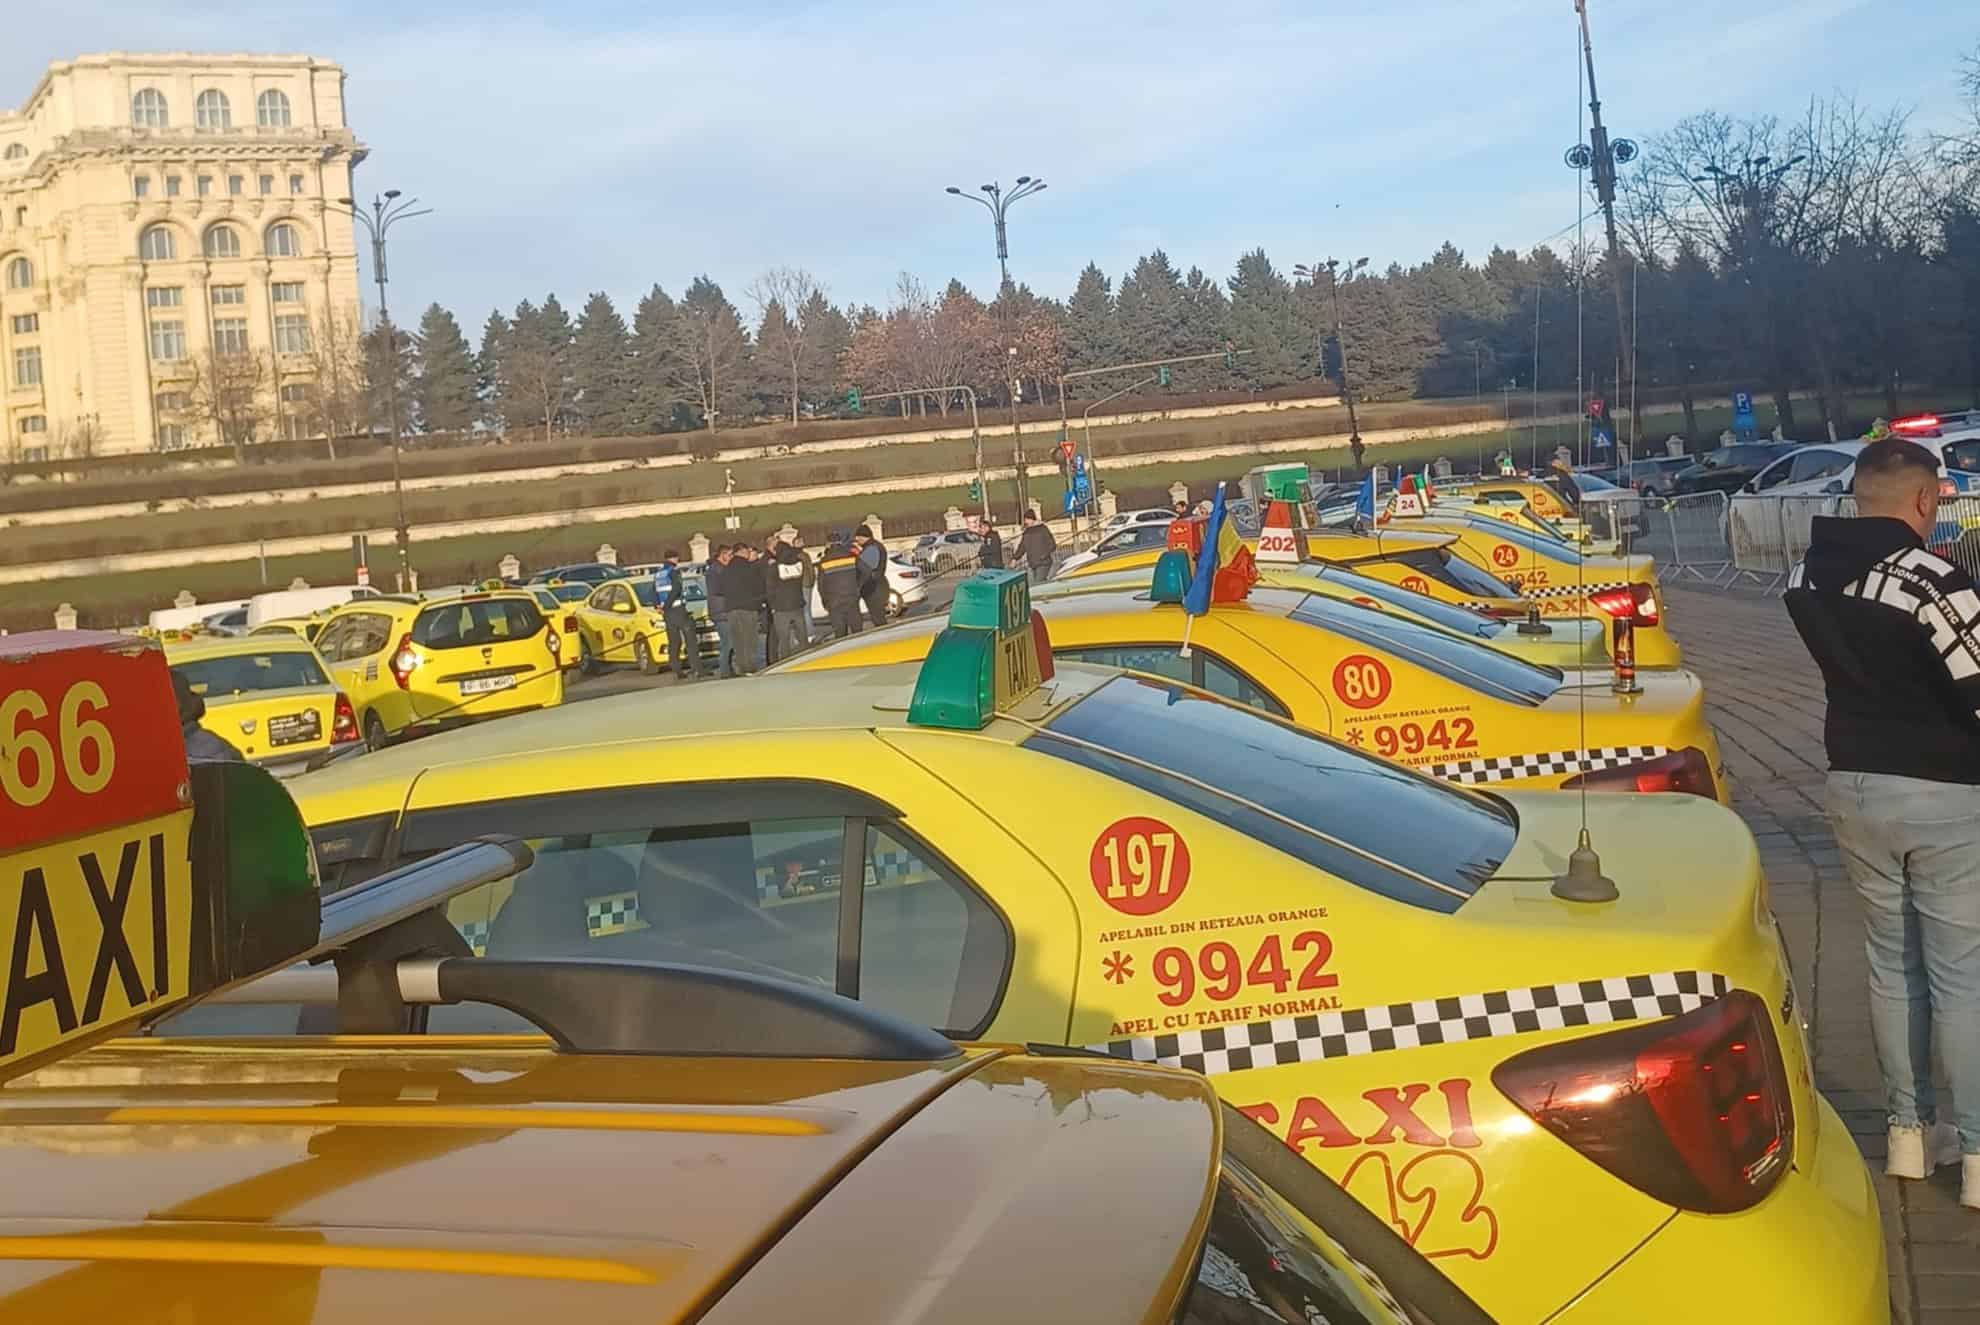 zeci de taximetriști din sibiu participă la protestul din bucurești. sibian: „ne dorim îmbunătățirea activității de taximetrie” (foto)